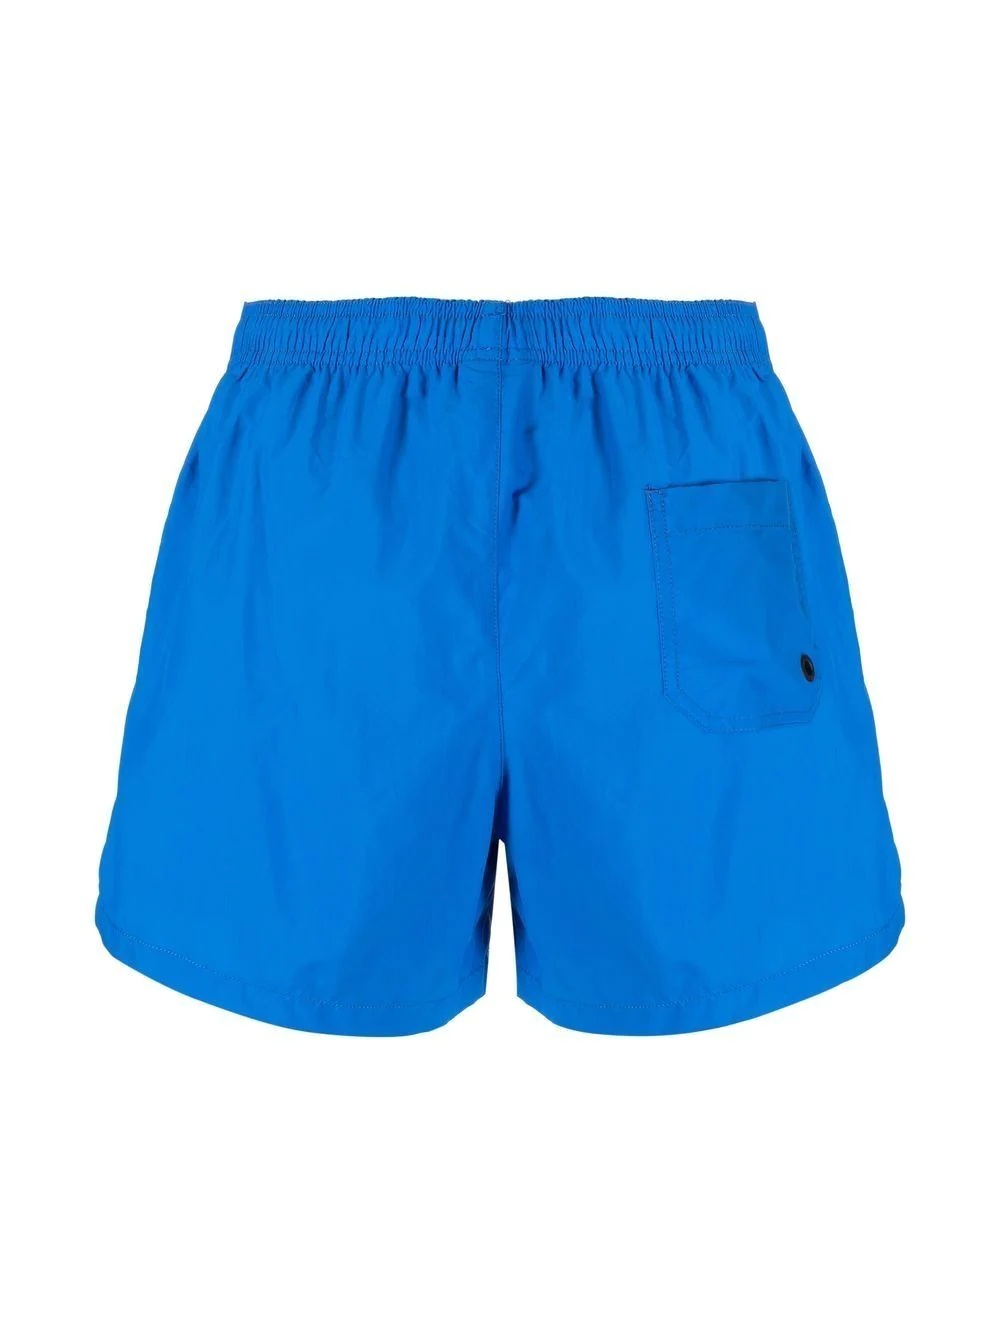 drawstring swim shorts - 2